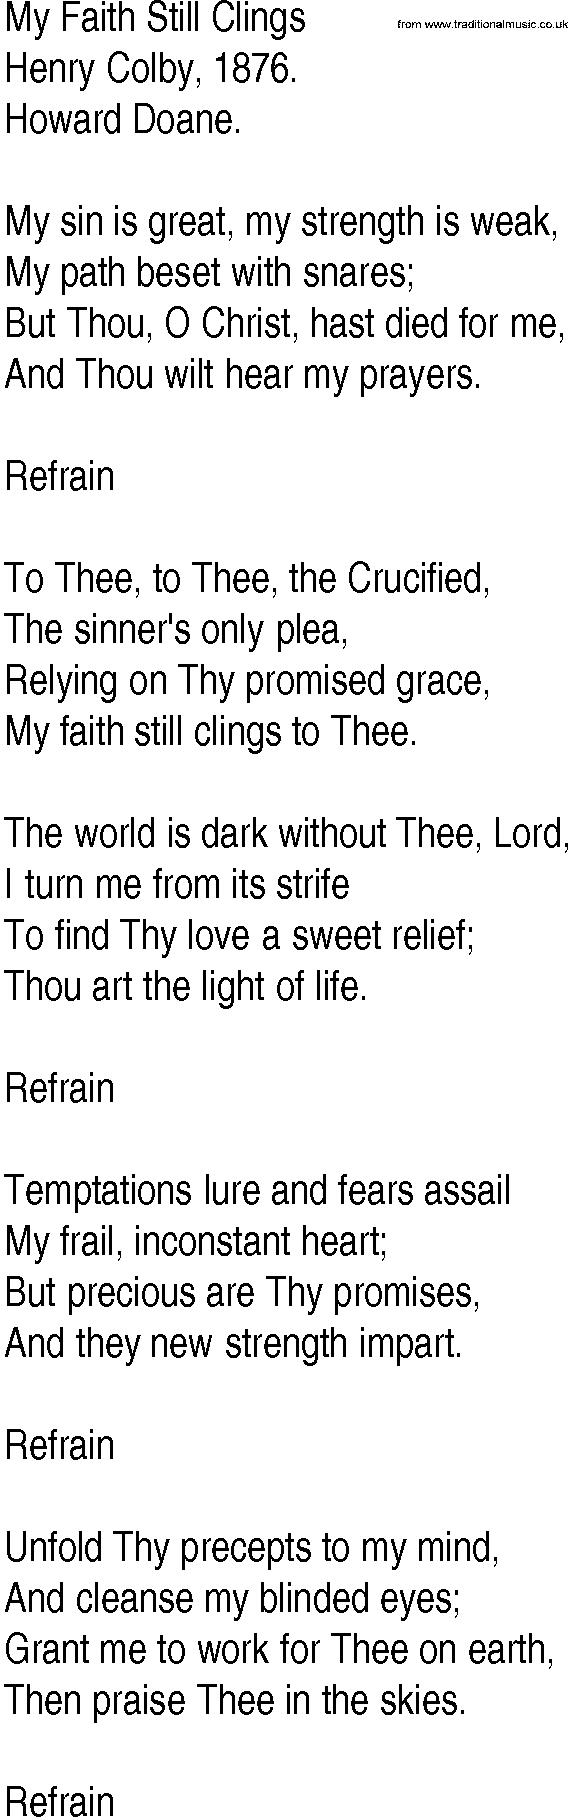 Hymn and Gospel Song: My Faith Still Clings by Henry Colby lyrics